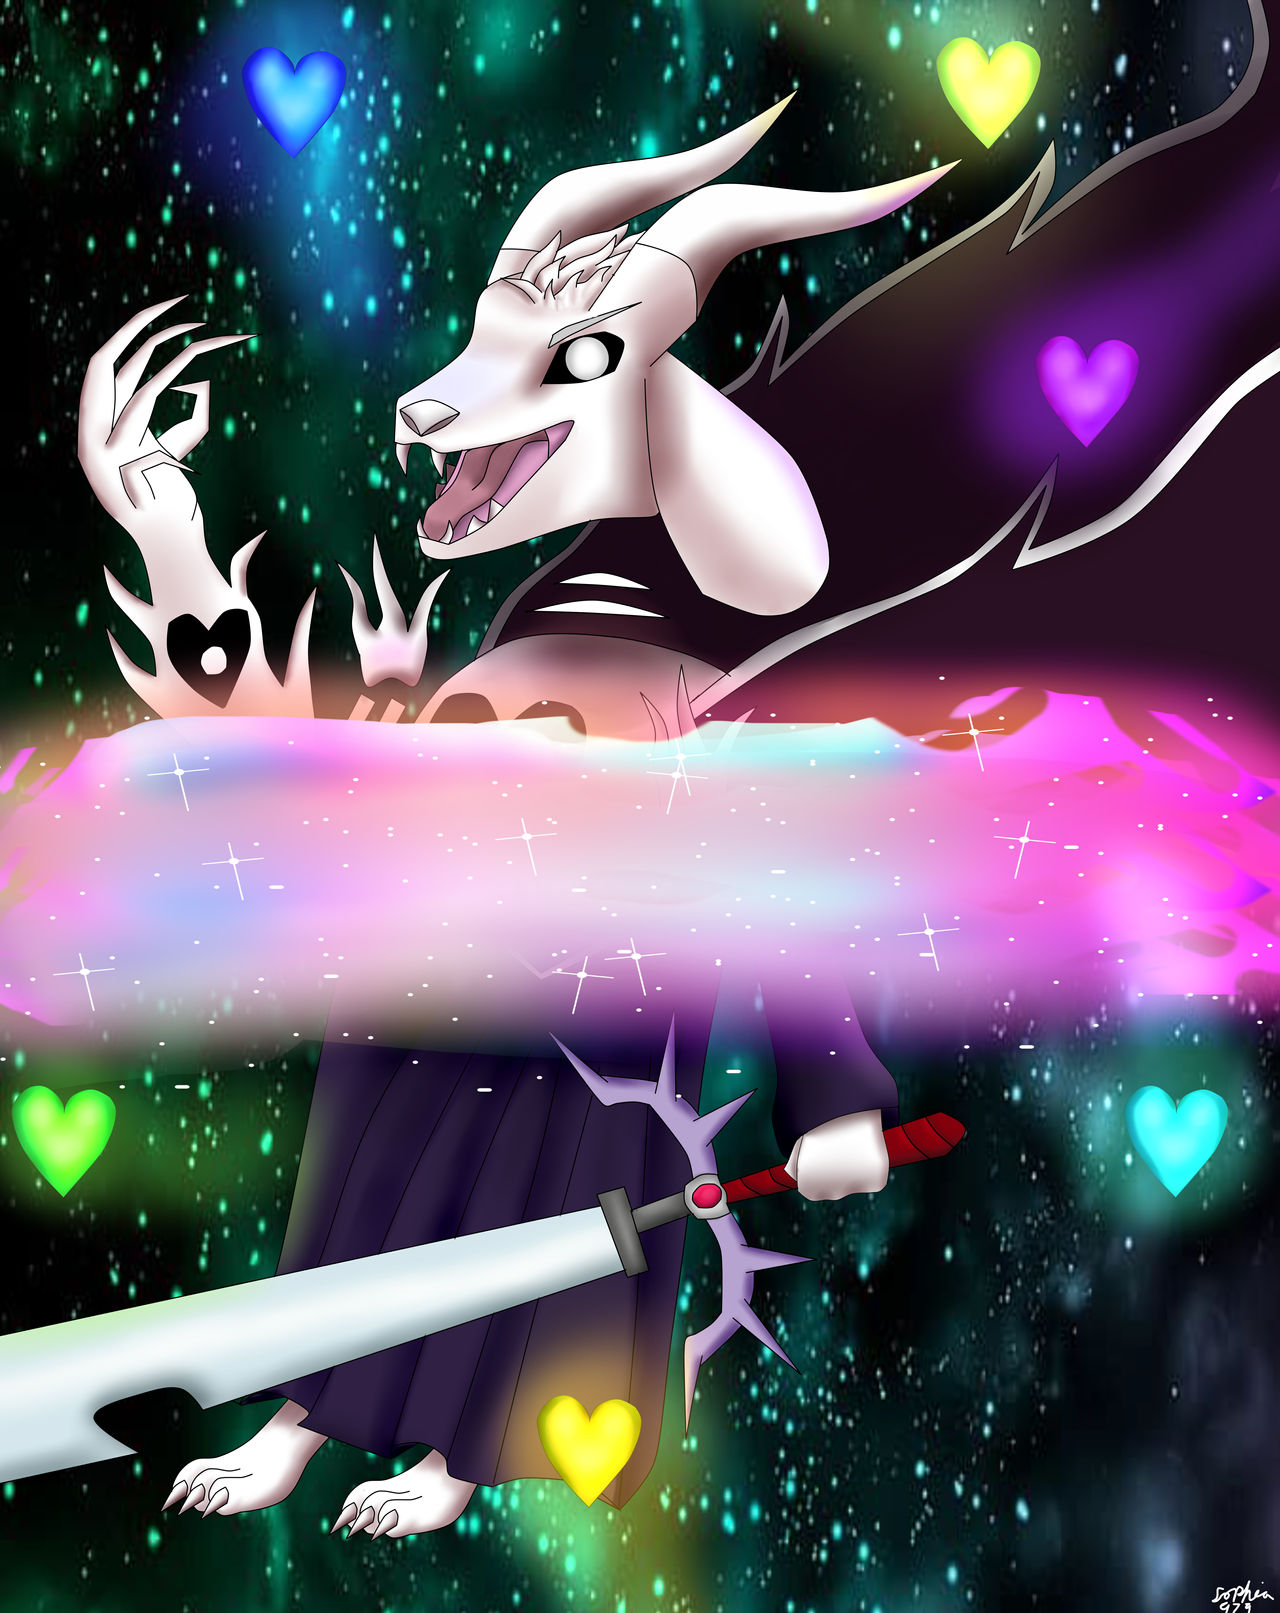 Behold my true power by Feline-Dragoness on DeviantArt